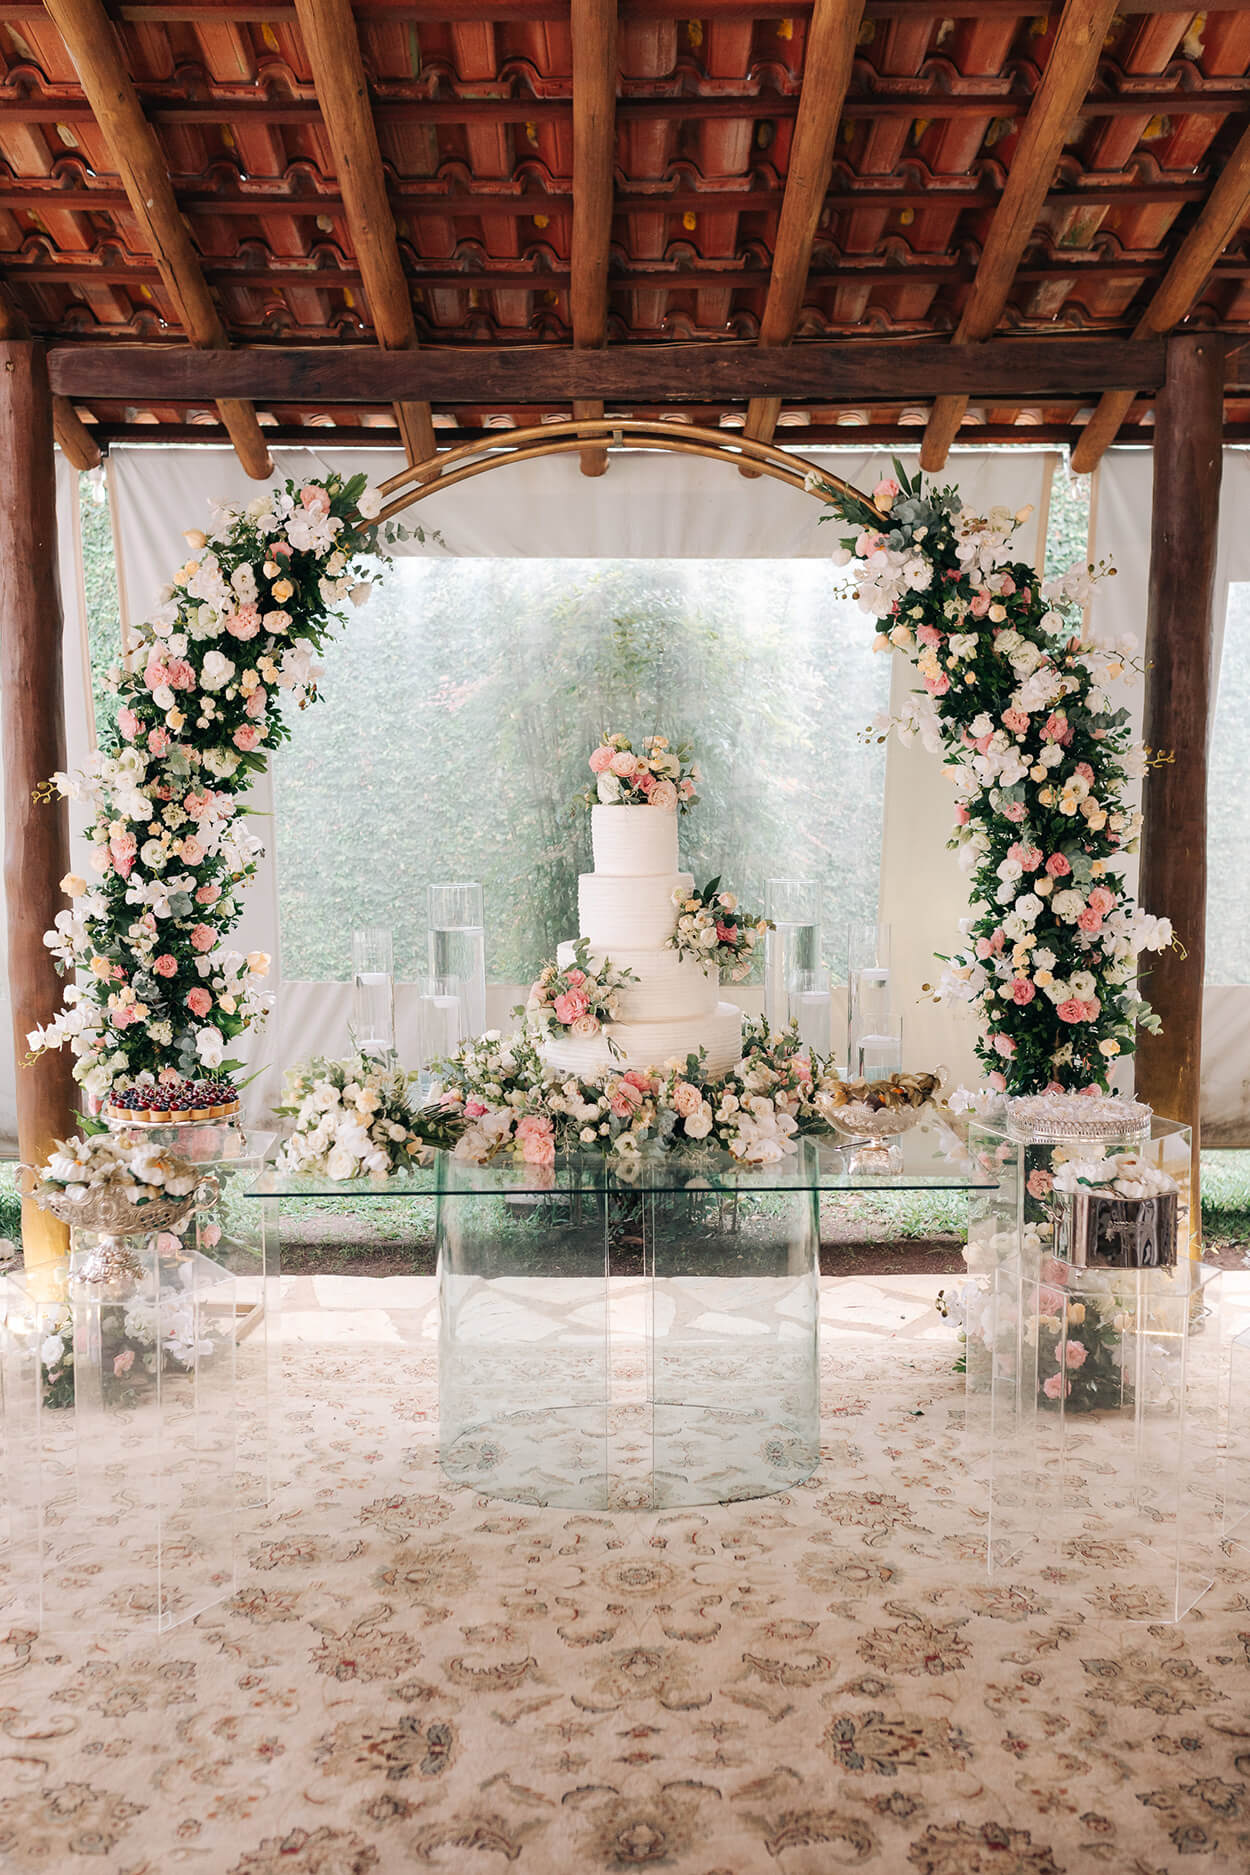 mesa de vidro com bolo de casamento branco com quatro andraes com flores amarelas brancas e rosas no fundo arco com flores brancas rosas e amarelas